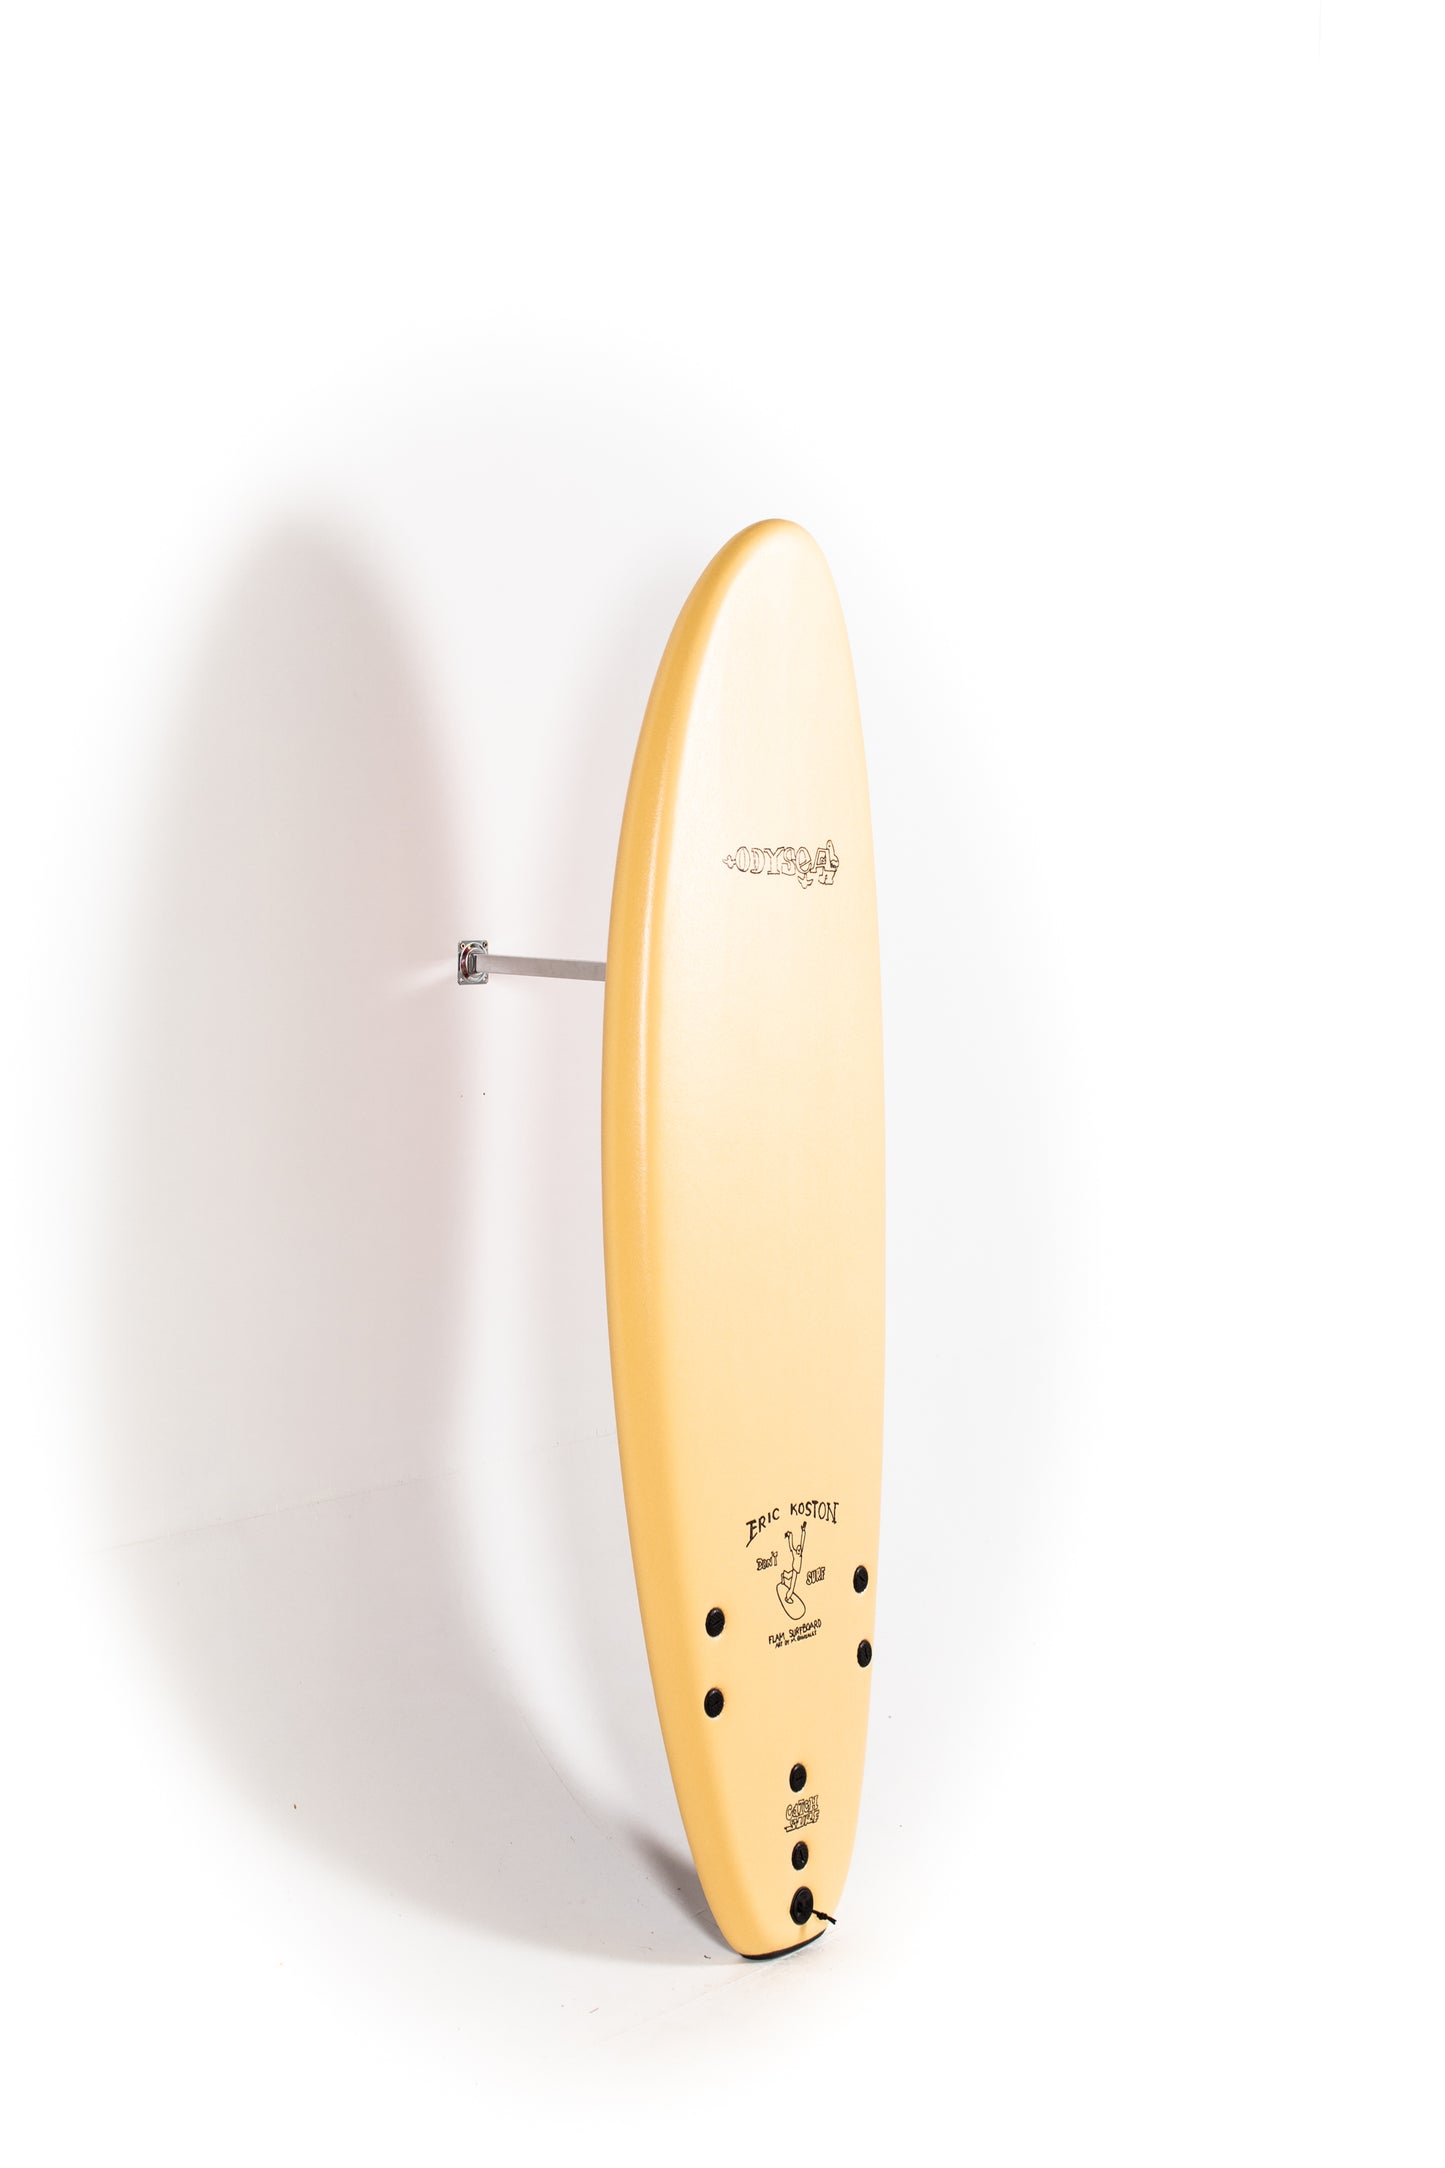 
                  
                    Pukas Surf Shop - Catch Surf - LOG x ERIC KOSTON - 6'0" x 22.0" x 3.125" x 57L
                  
                